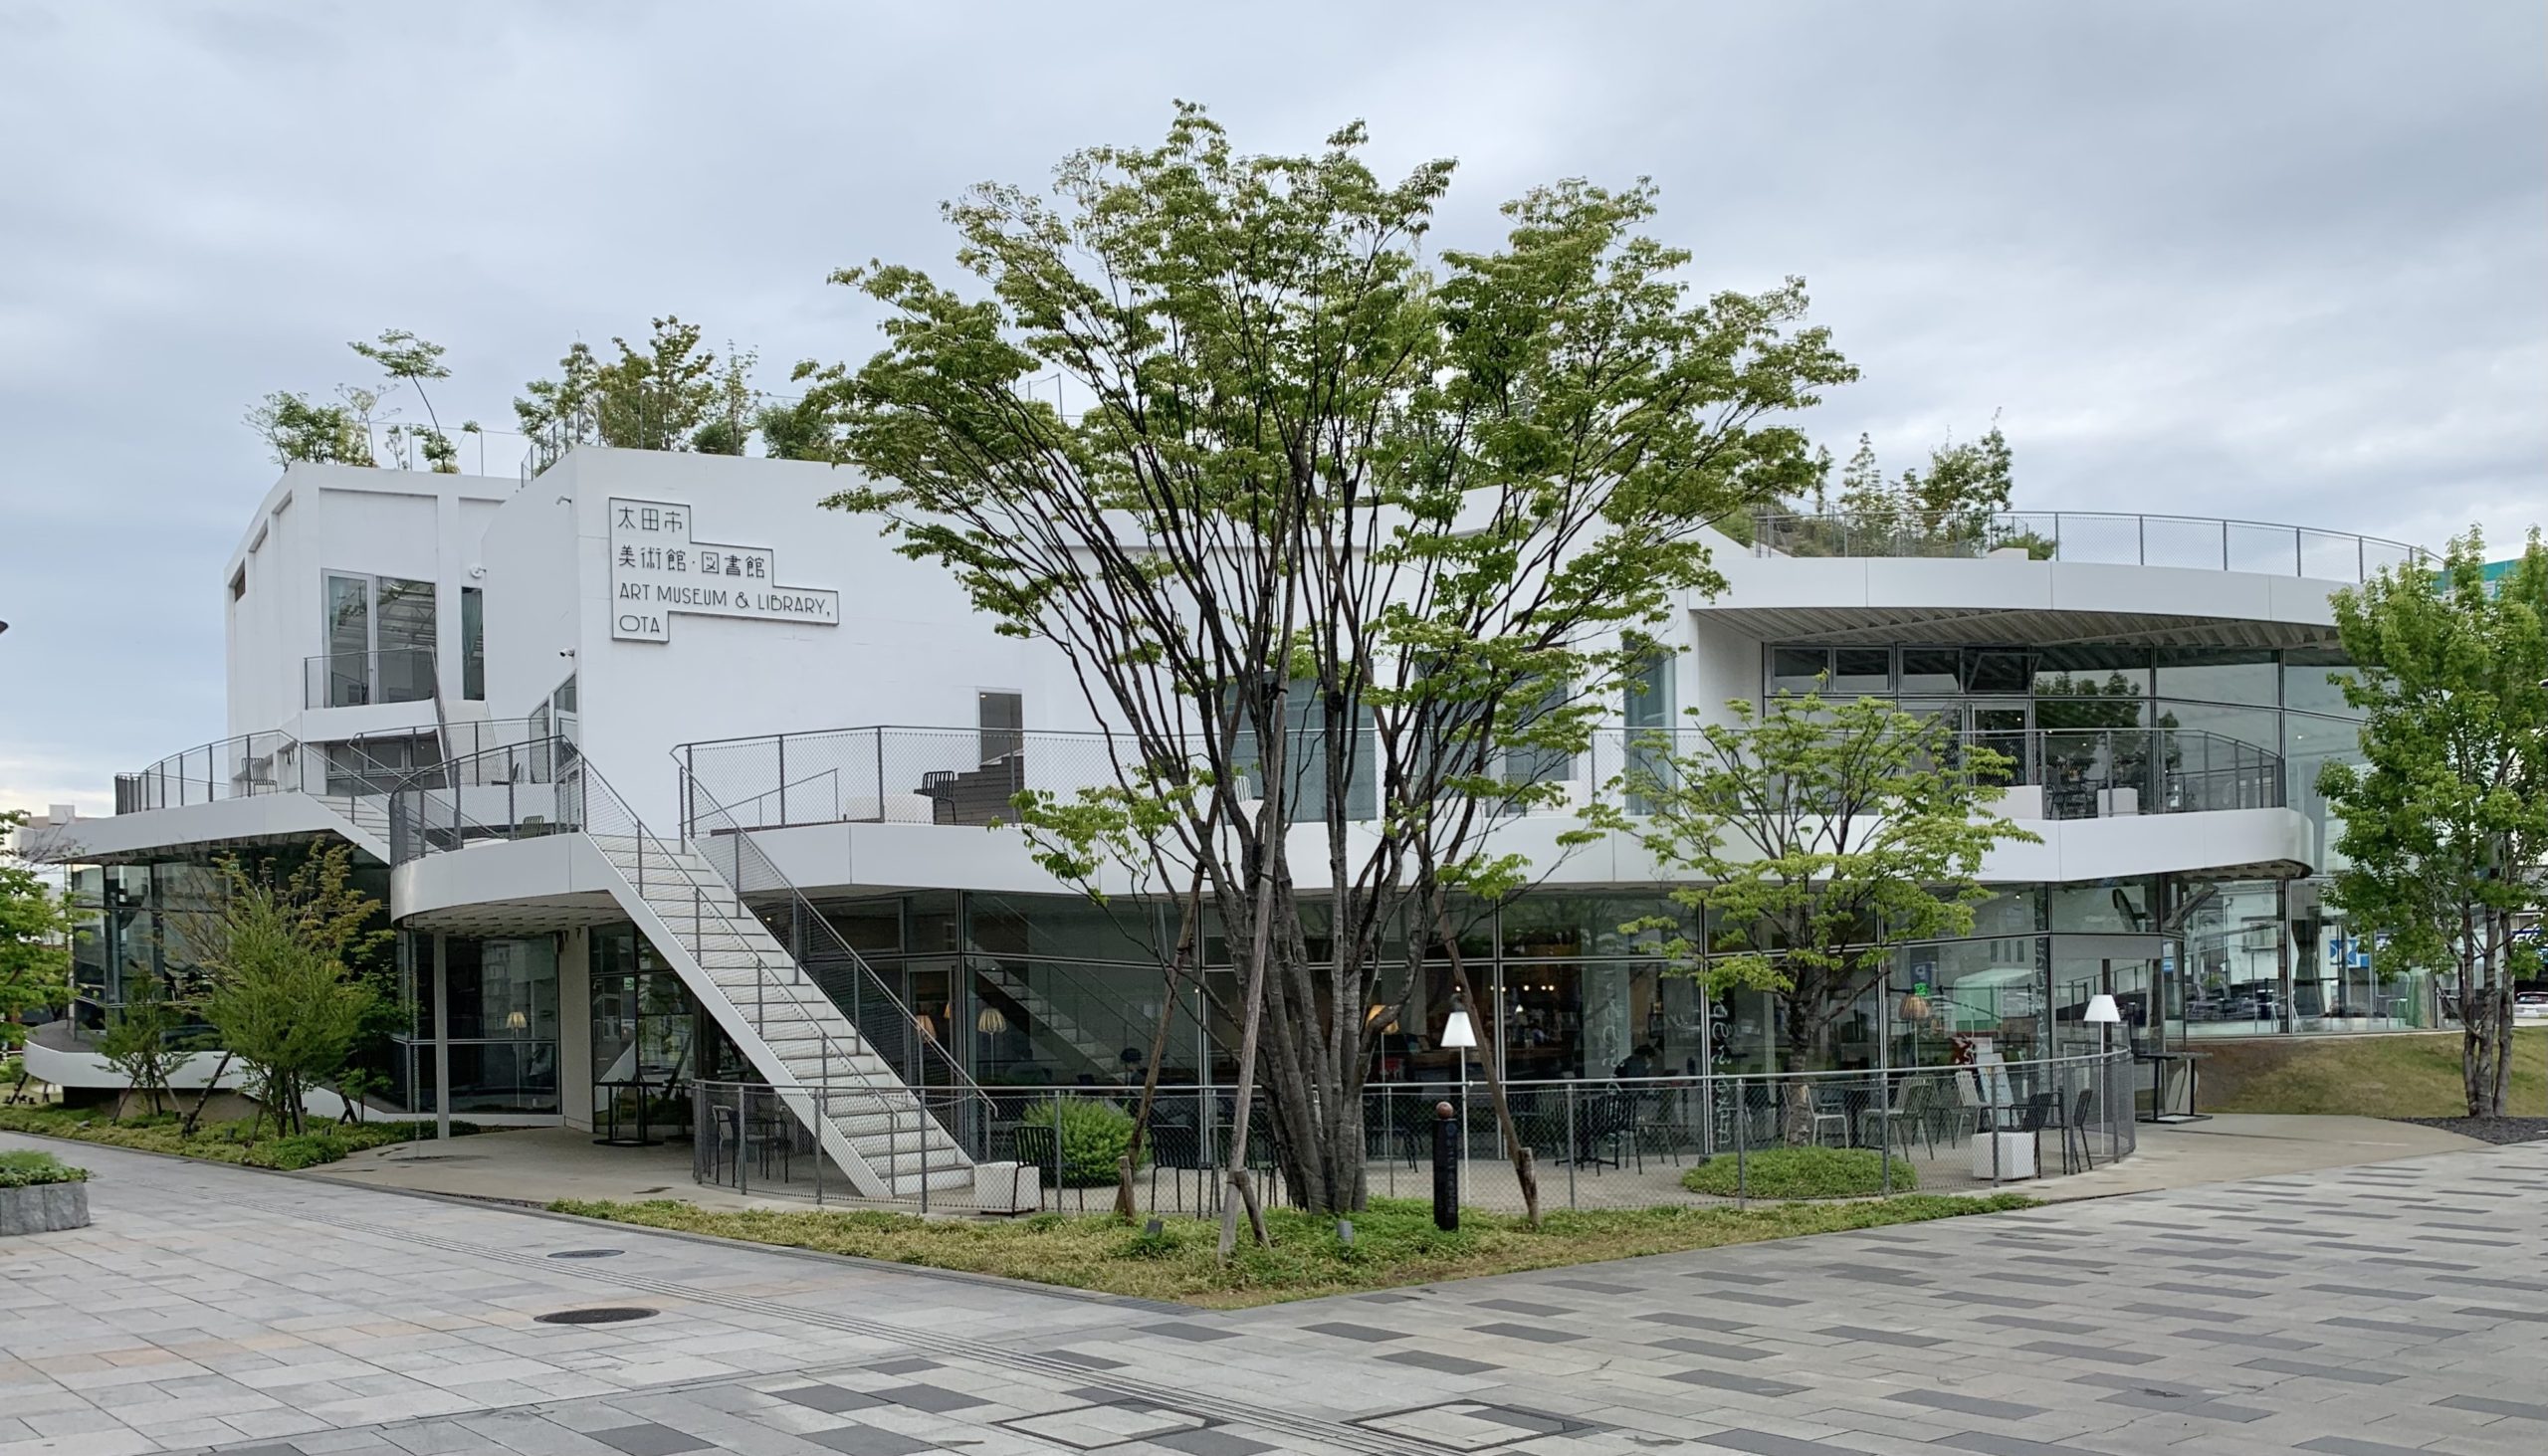 「太田市美術館・図書館」をご紹介します。平田晃久建築設計事務所 群馬県太田市